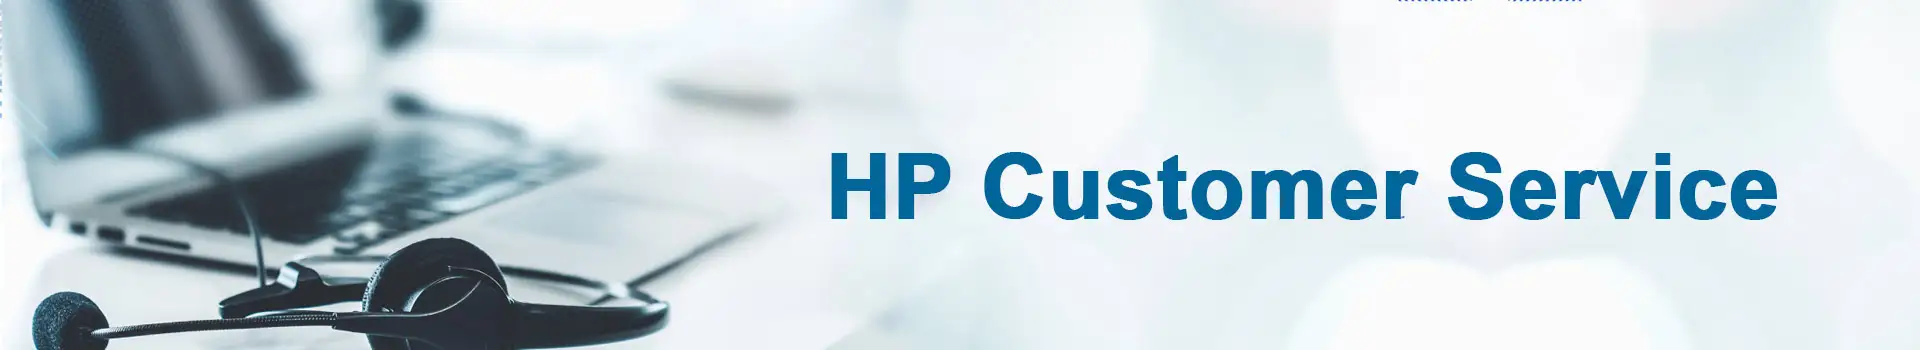 hp customer service